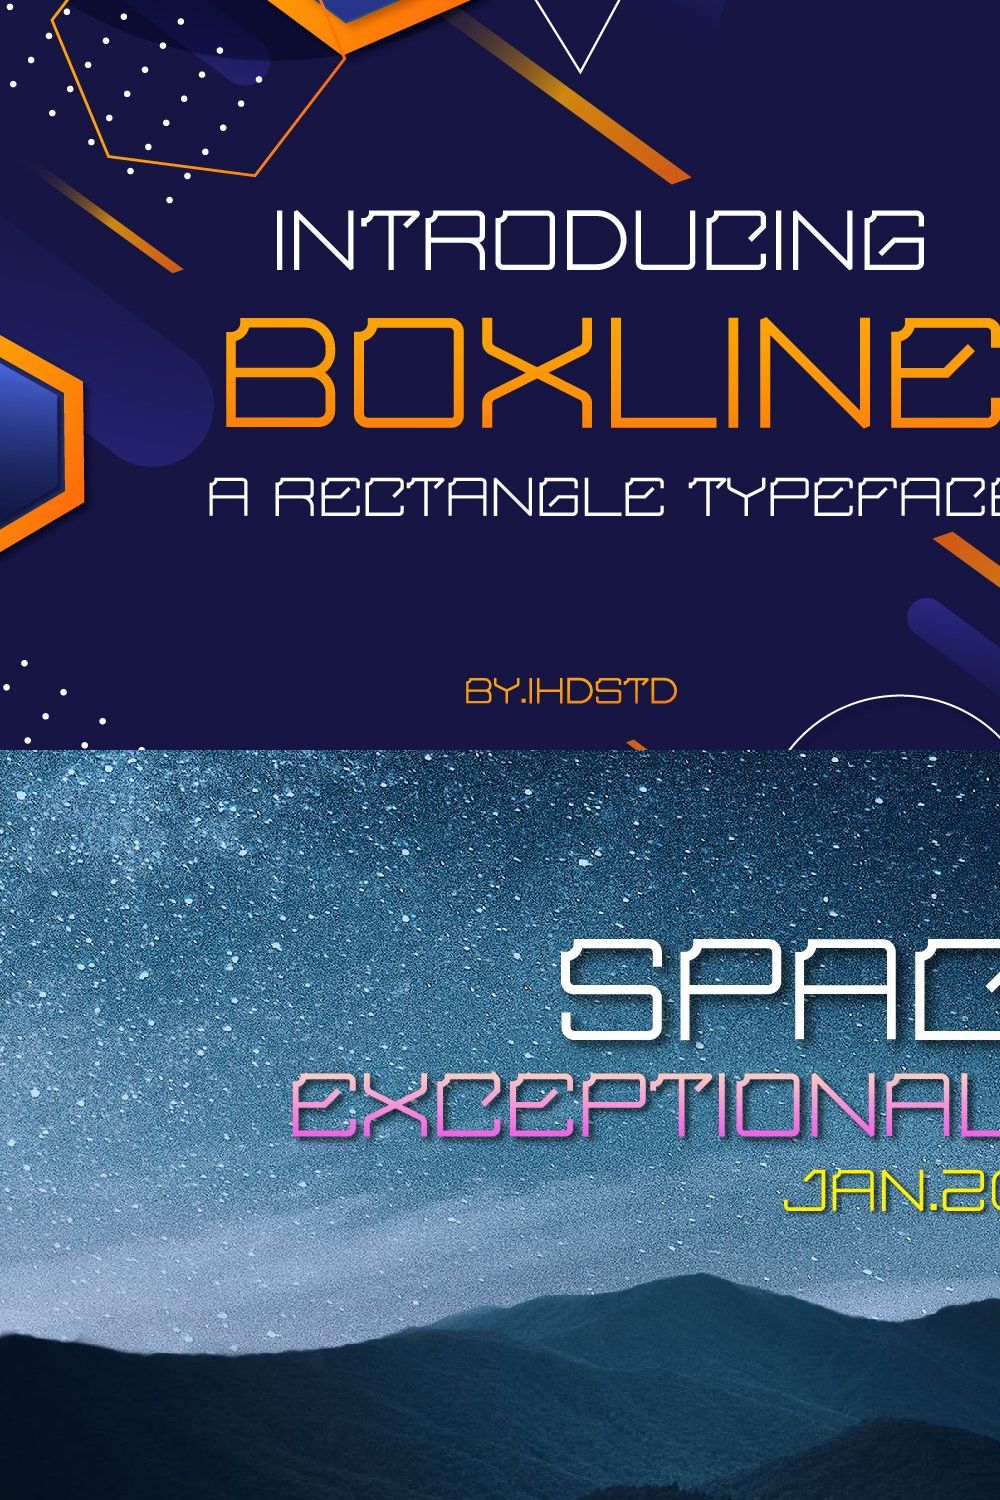 Boxline Rectangle Typeface pinterest preview image.